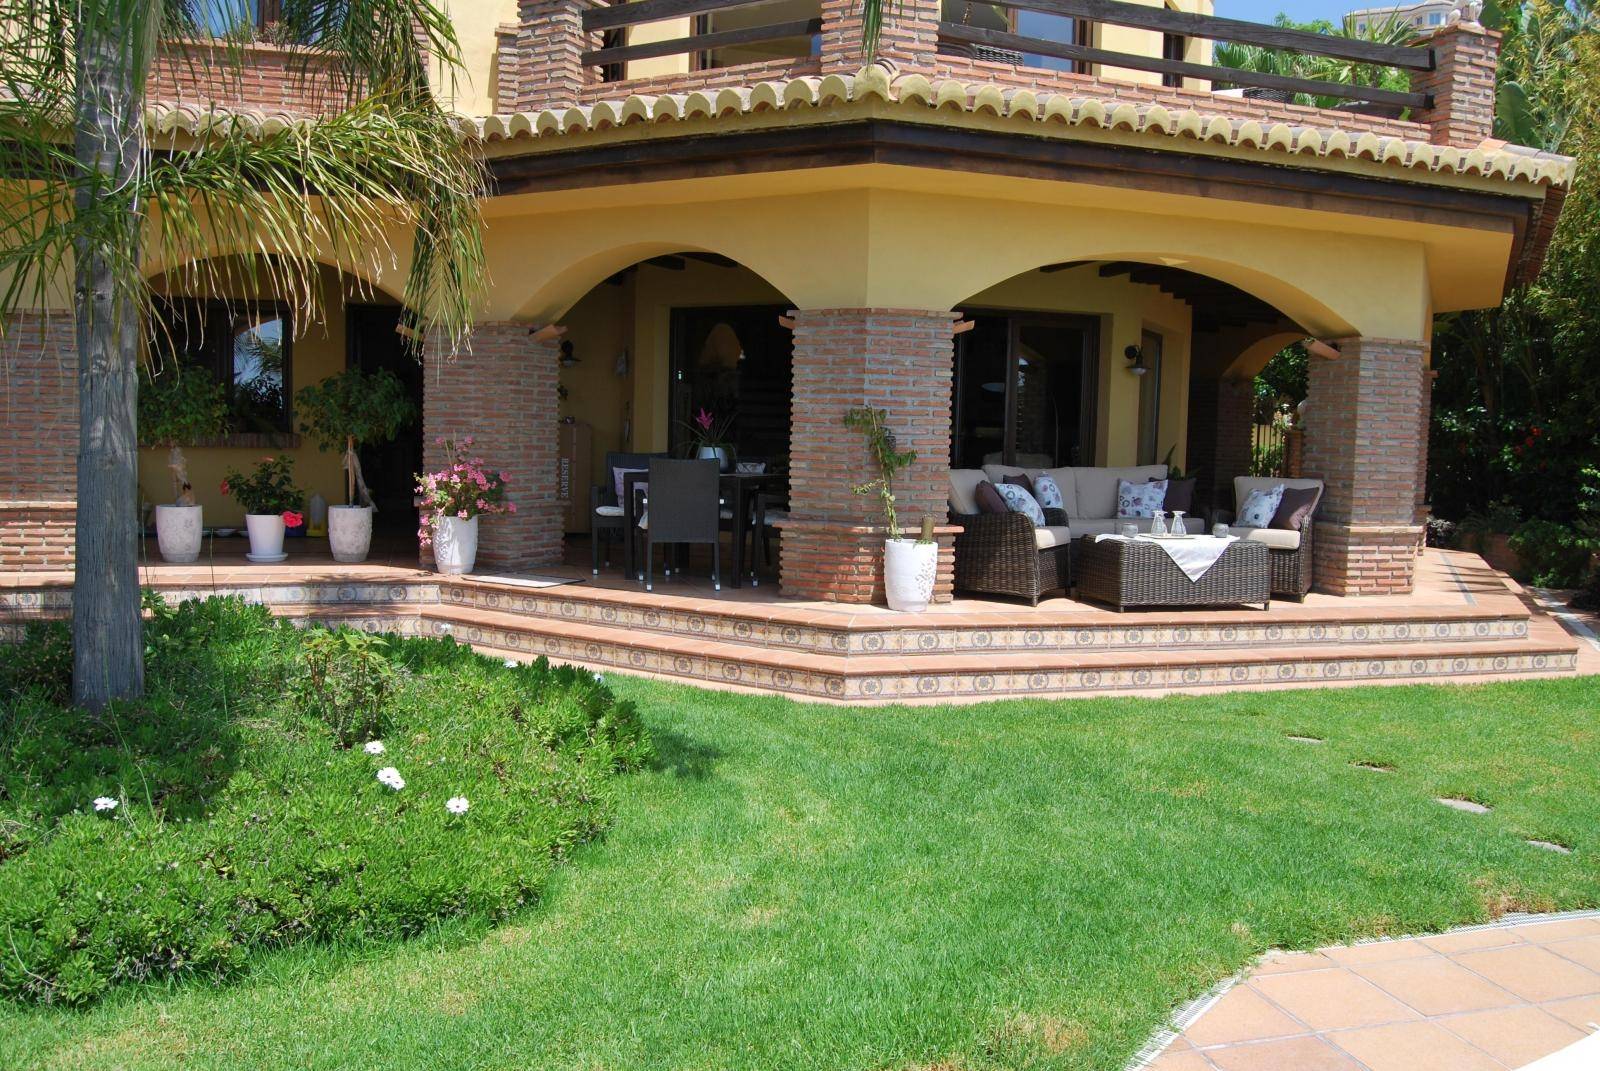 Beautiful villa for sale in Monte de los Almendros with stunning views. Salobreña